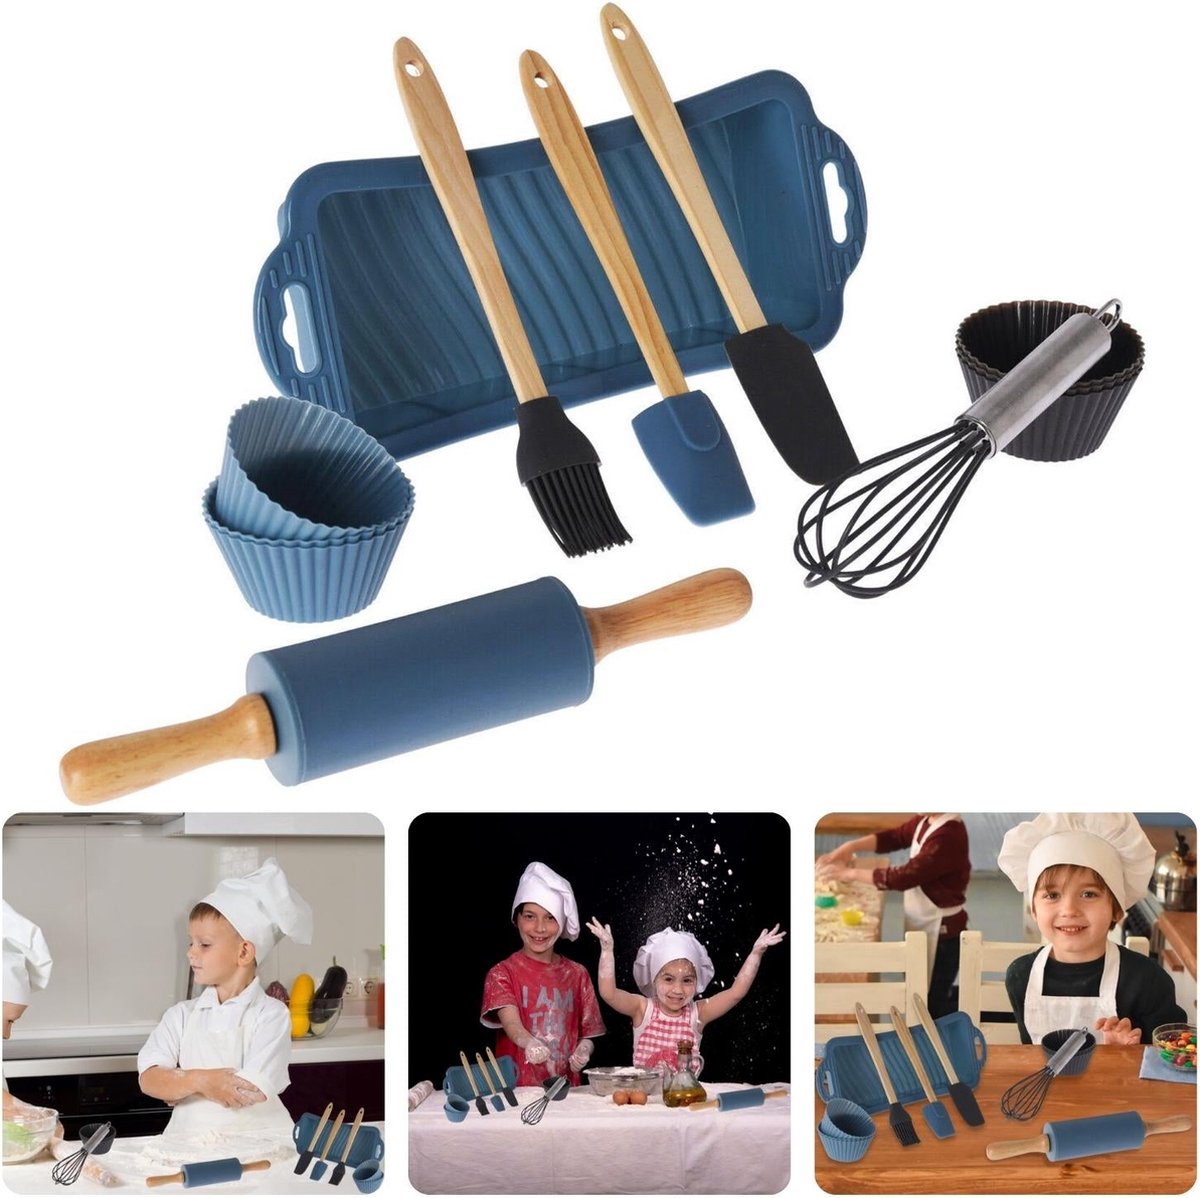 Cheqo® Kinder Bakset - 12-Delige Set - Bakset voor kinderen met Cupcake Vormen - Bakvorm en Accessoires - Kwast - Spatel - Deegroller - Kinderfeestje - Cake Bakken - Cupcakes Maken - Cadeau voor Kinderen